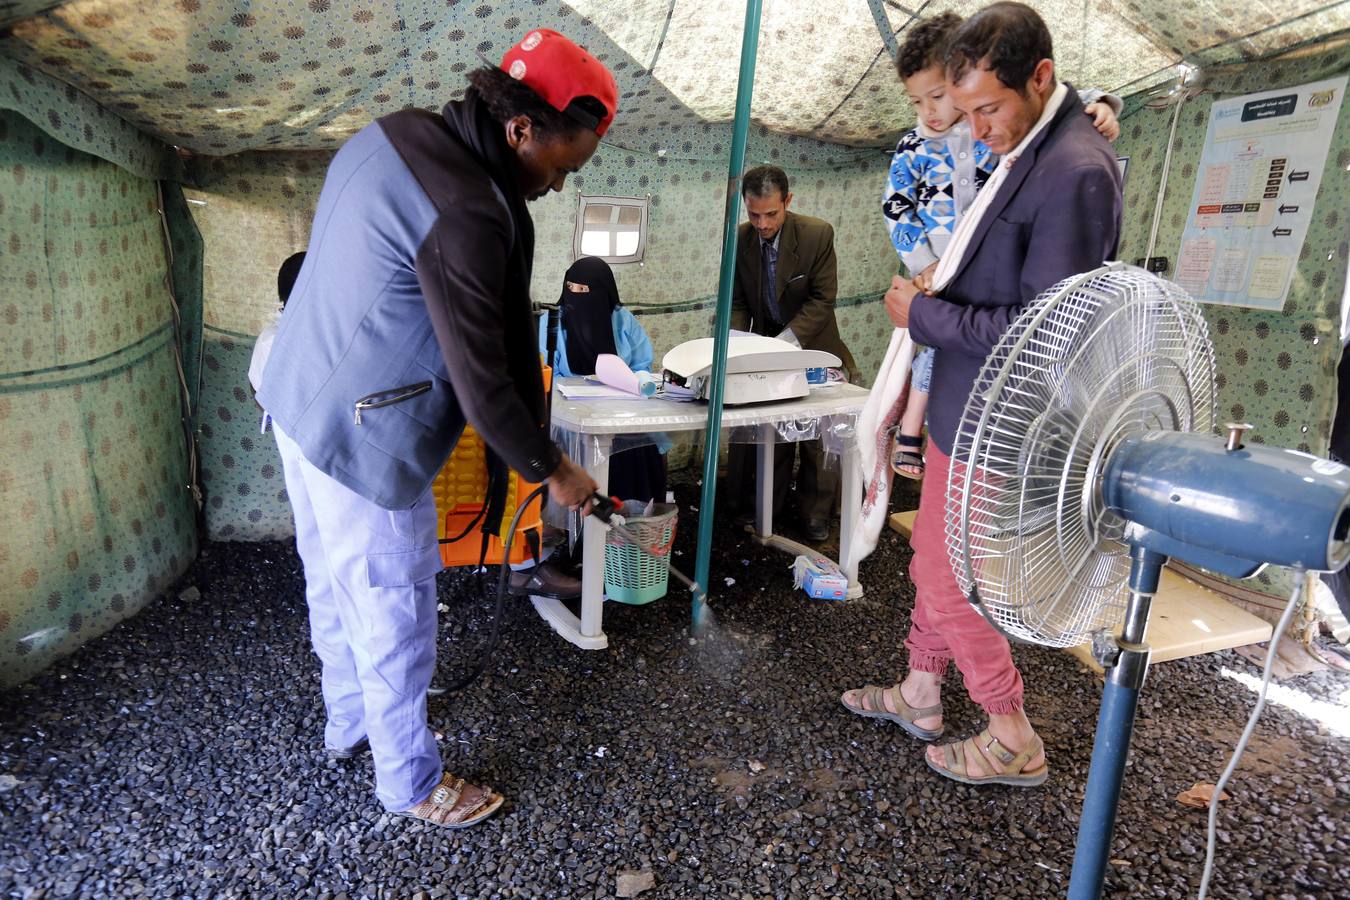 Los yemeníes infectados con cólera reciben tratamiento en un centro de tratamiento de cólera en medio de una nueva ola de epidemia de cólera en Sana'Äôa, Yemen, el 17 de marzo de 2019. Según informes de salud, una nueva ola de brotes de cólera que se propagan rápidamente en Yemen ha afectado a casi 90 miles de personas y causó al menos 130 muertes asociadas desde enero de 2019. La Organización Mundial de la Salud (OMS) ha informado que alrededor de 1 millón de personas en Yemen se han visto afectadas por la epidemia de cólera y más de 2,515 muertes asociadas desde abril de 2017.